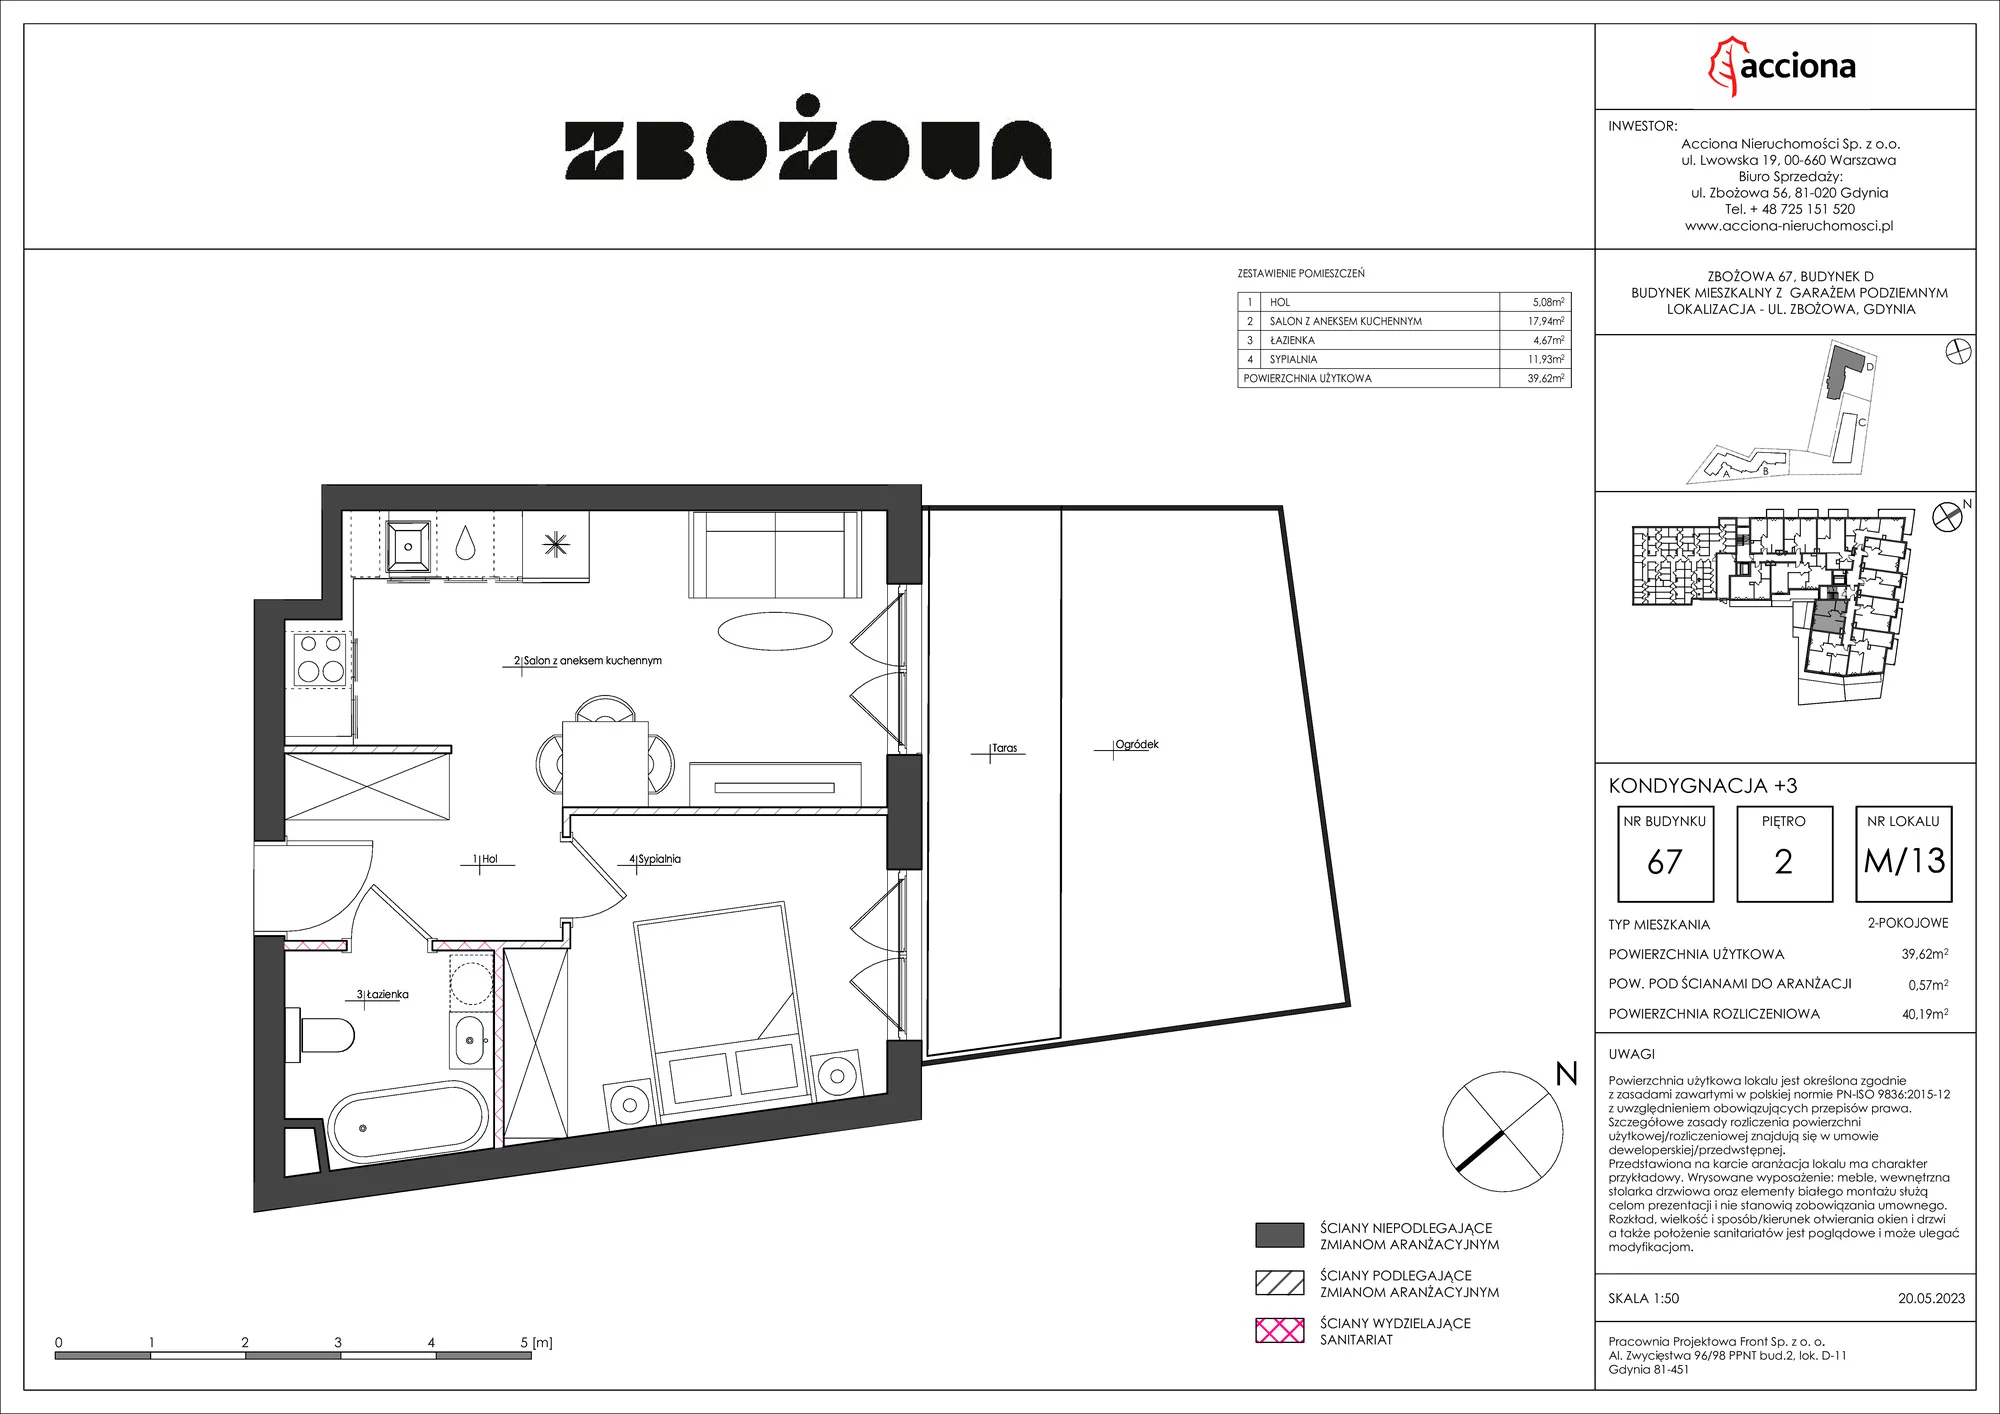 Mieszkanie 40,19 m², piętro 2, oferta nr 67.13, Zbożowa, Gdynia, Cisowa, ul. Zbożowa